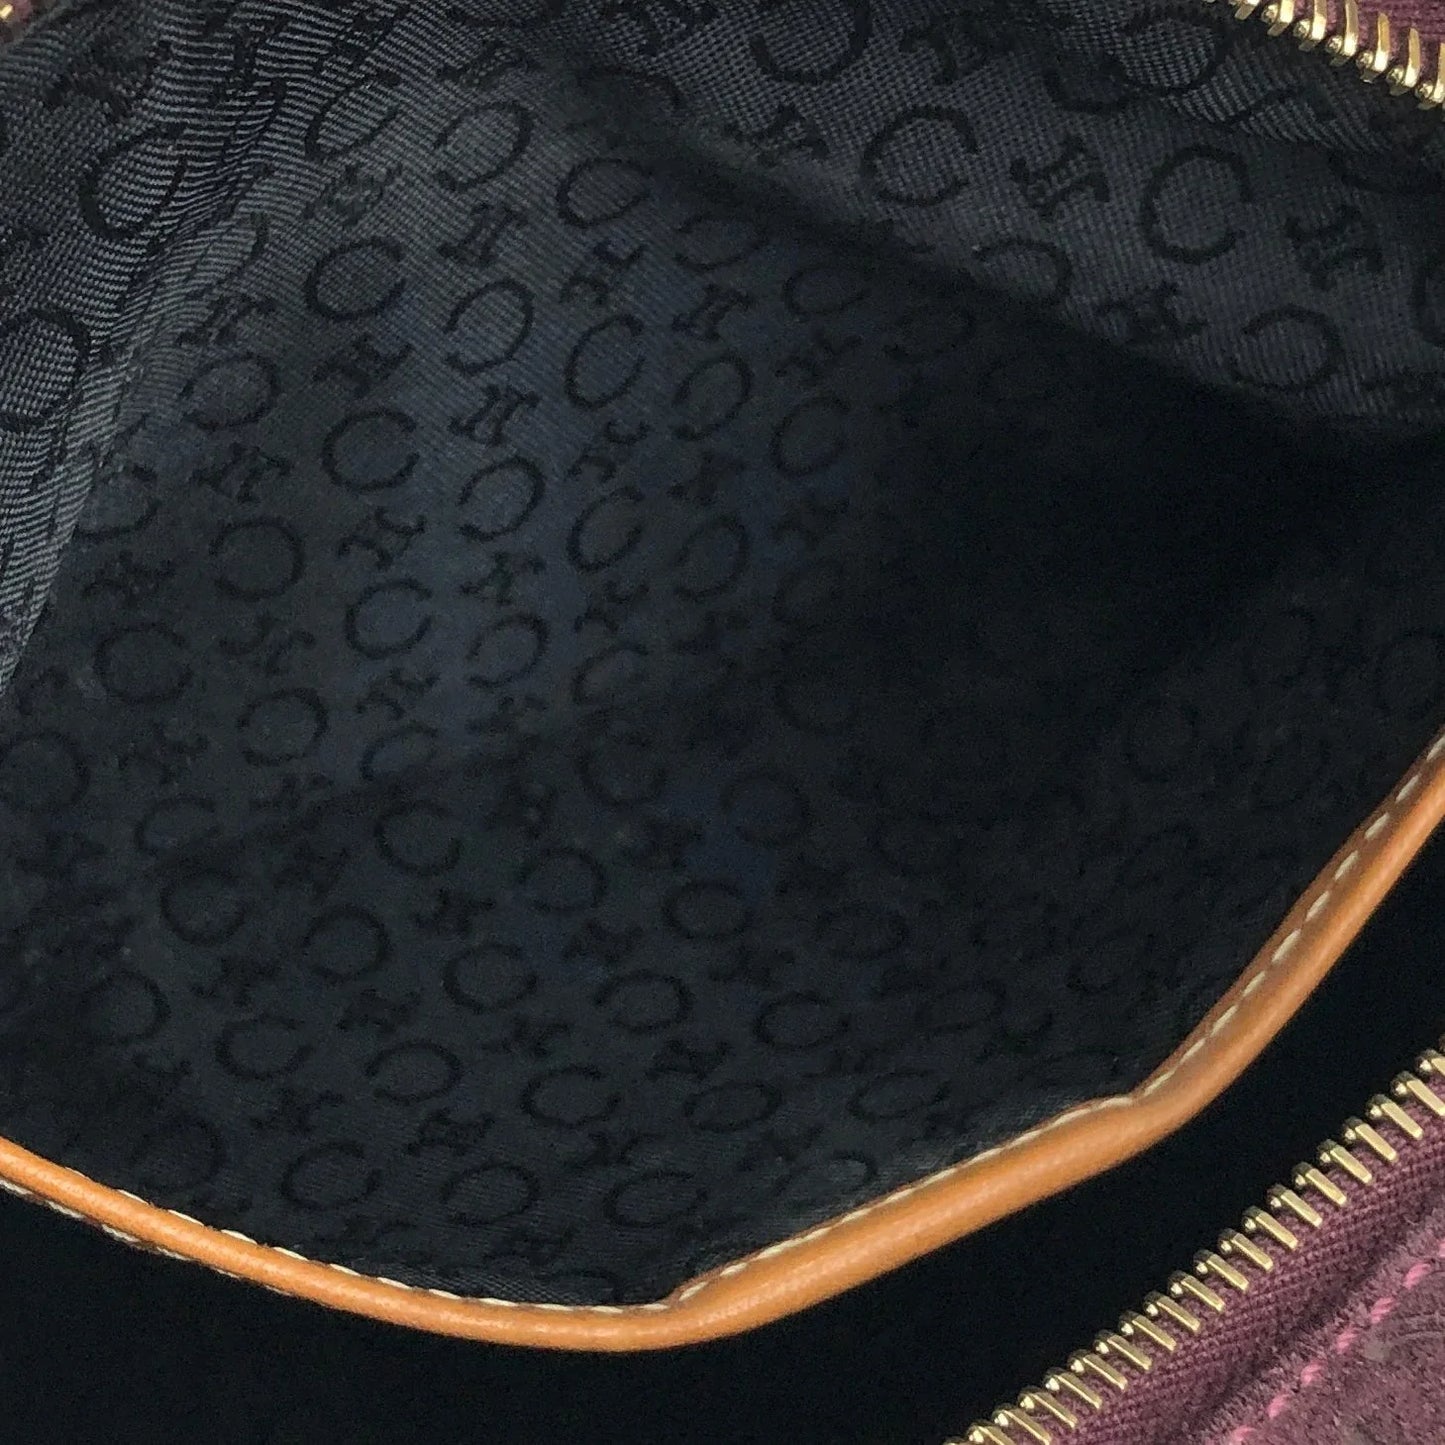 CELINE C Macadam Suede Leather Handag Hobobag Shoulder bag Brown Old Celine Vintage jhw4et